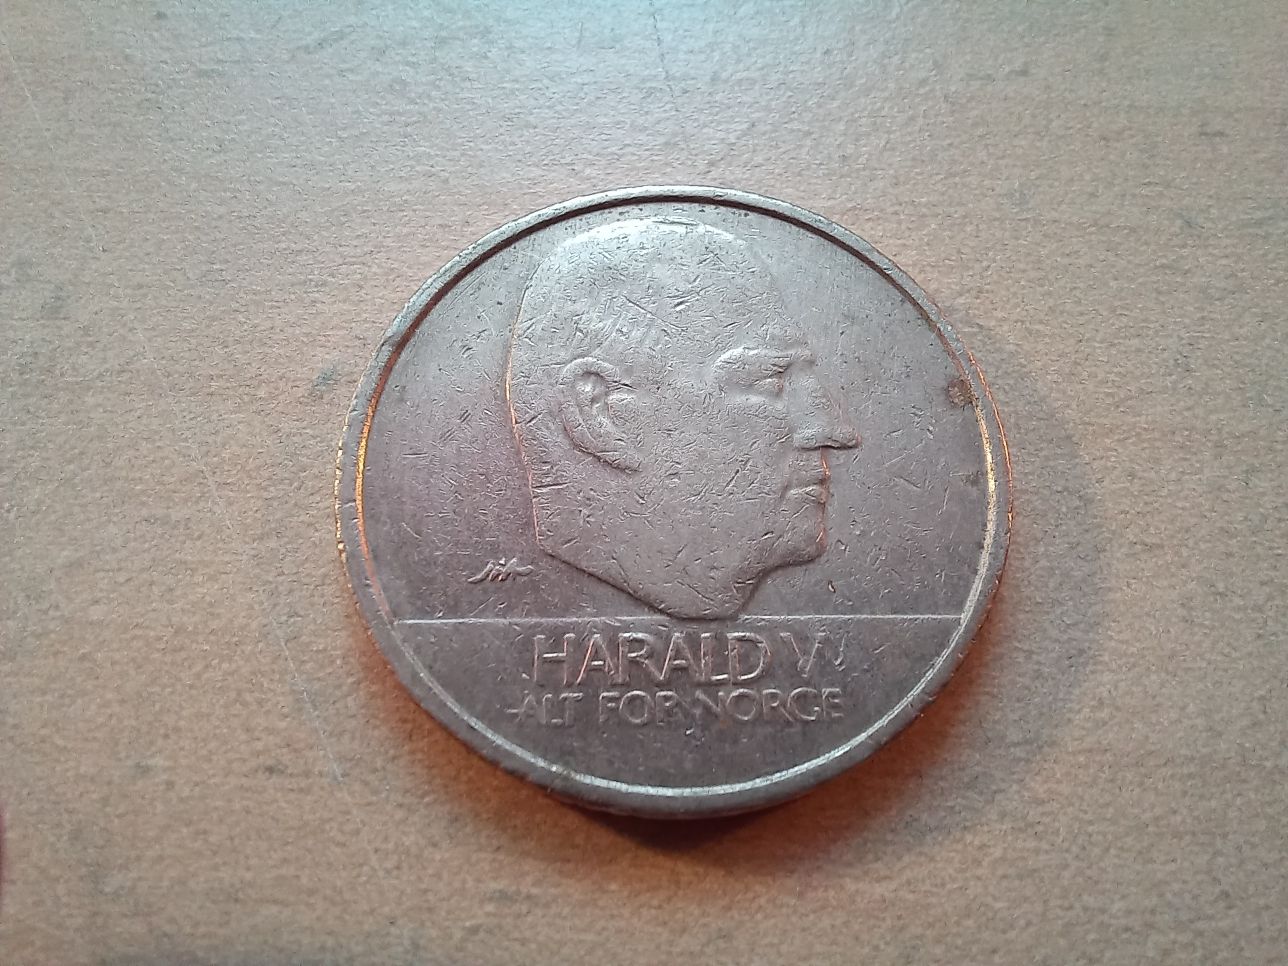 Norwegia  - historyczna moneta obiegowa 10 koron z 1996 r